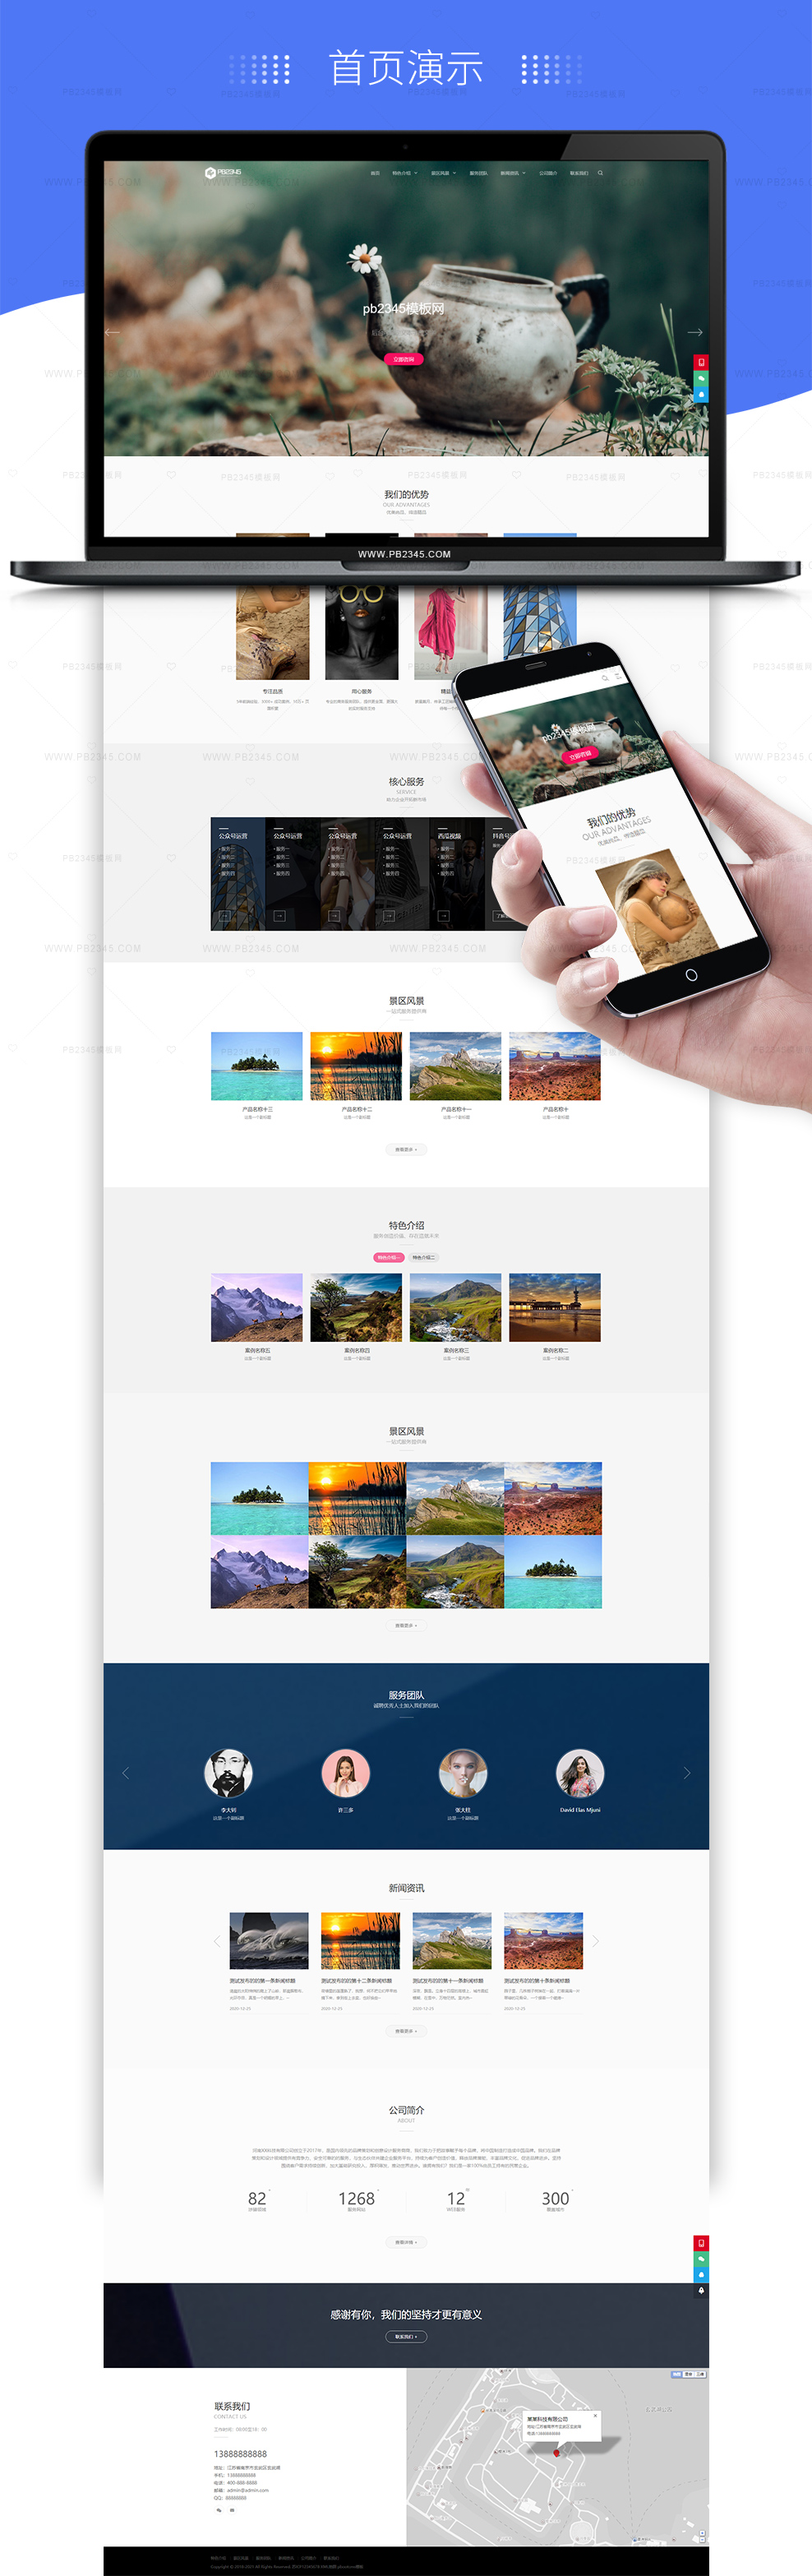 PBOOTCMS品牌设计类网站模板高端艺术创意设计旅游风景类网站源码(自适应手机端)